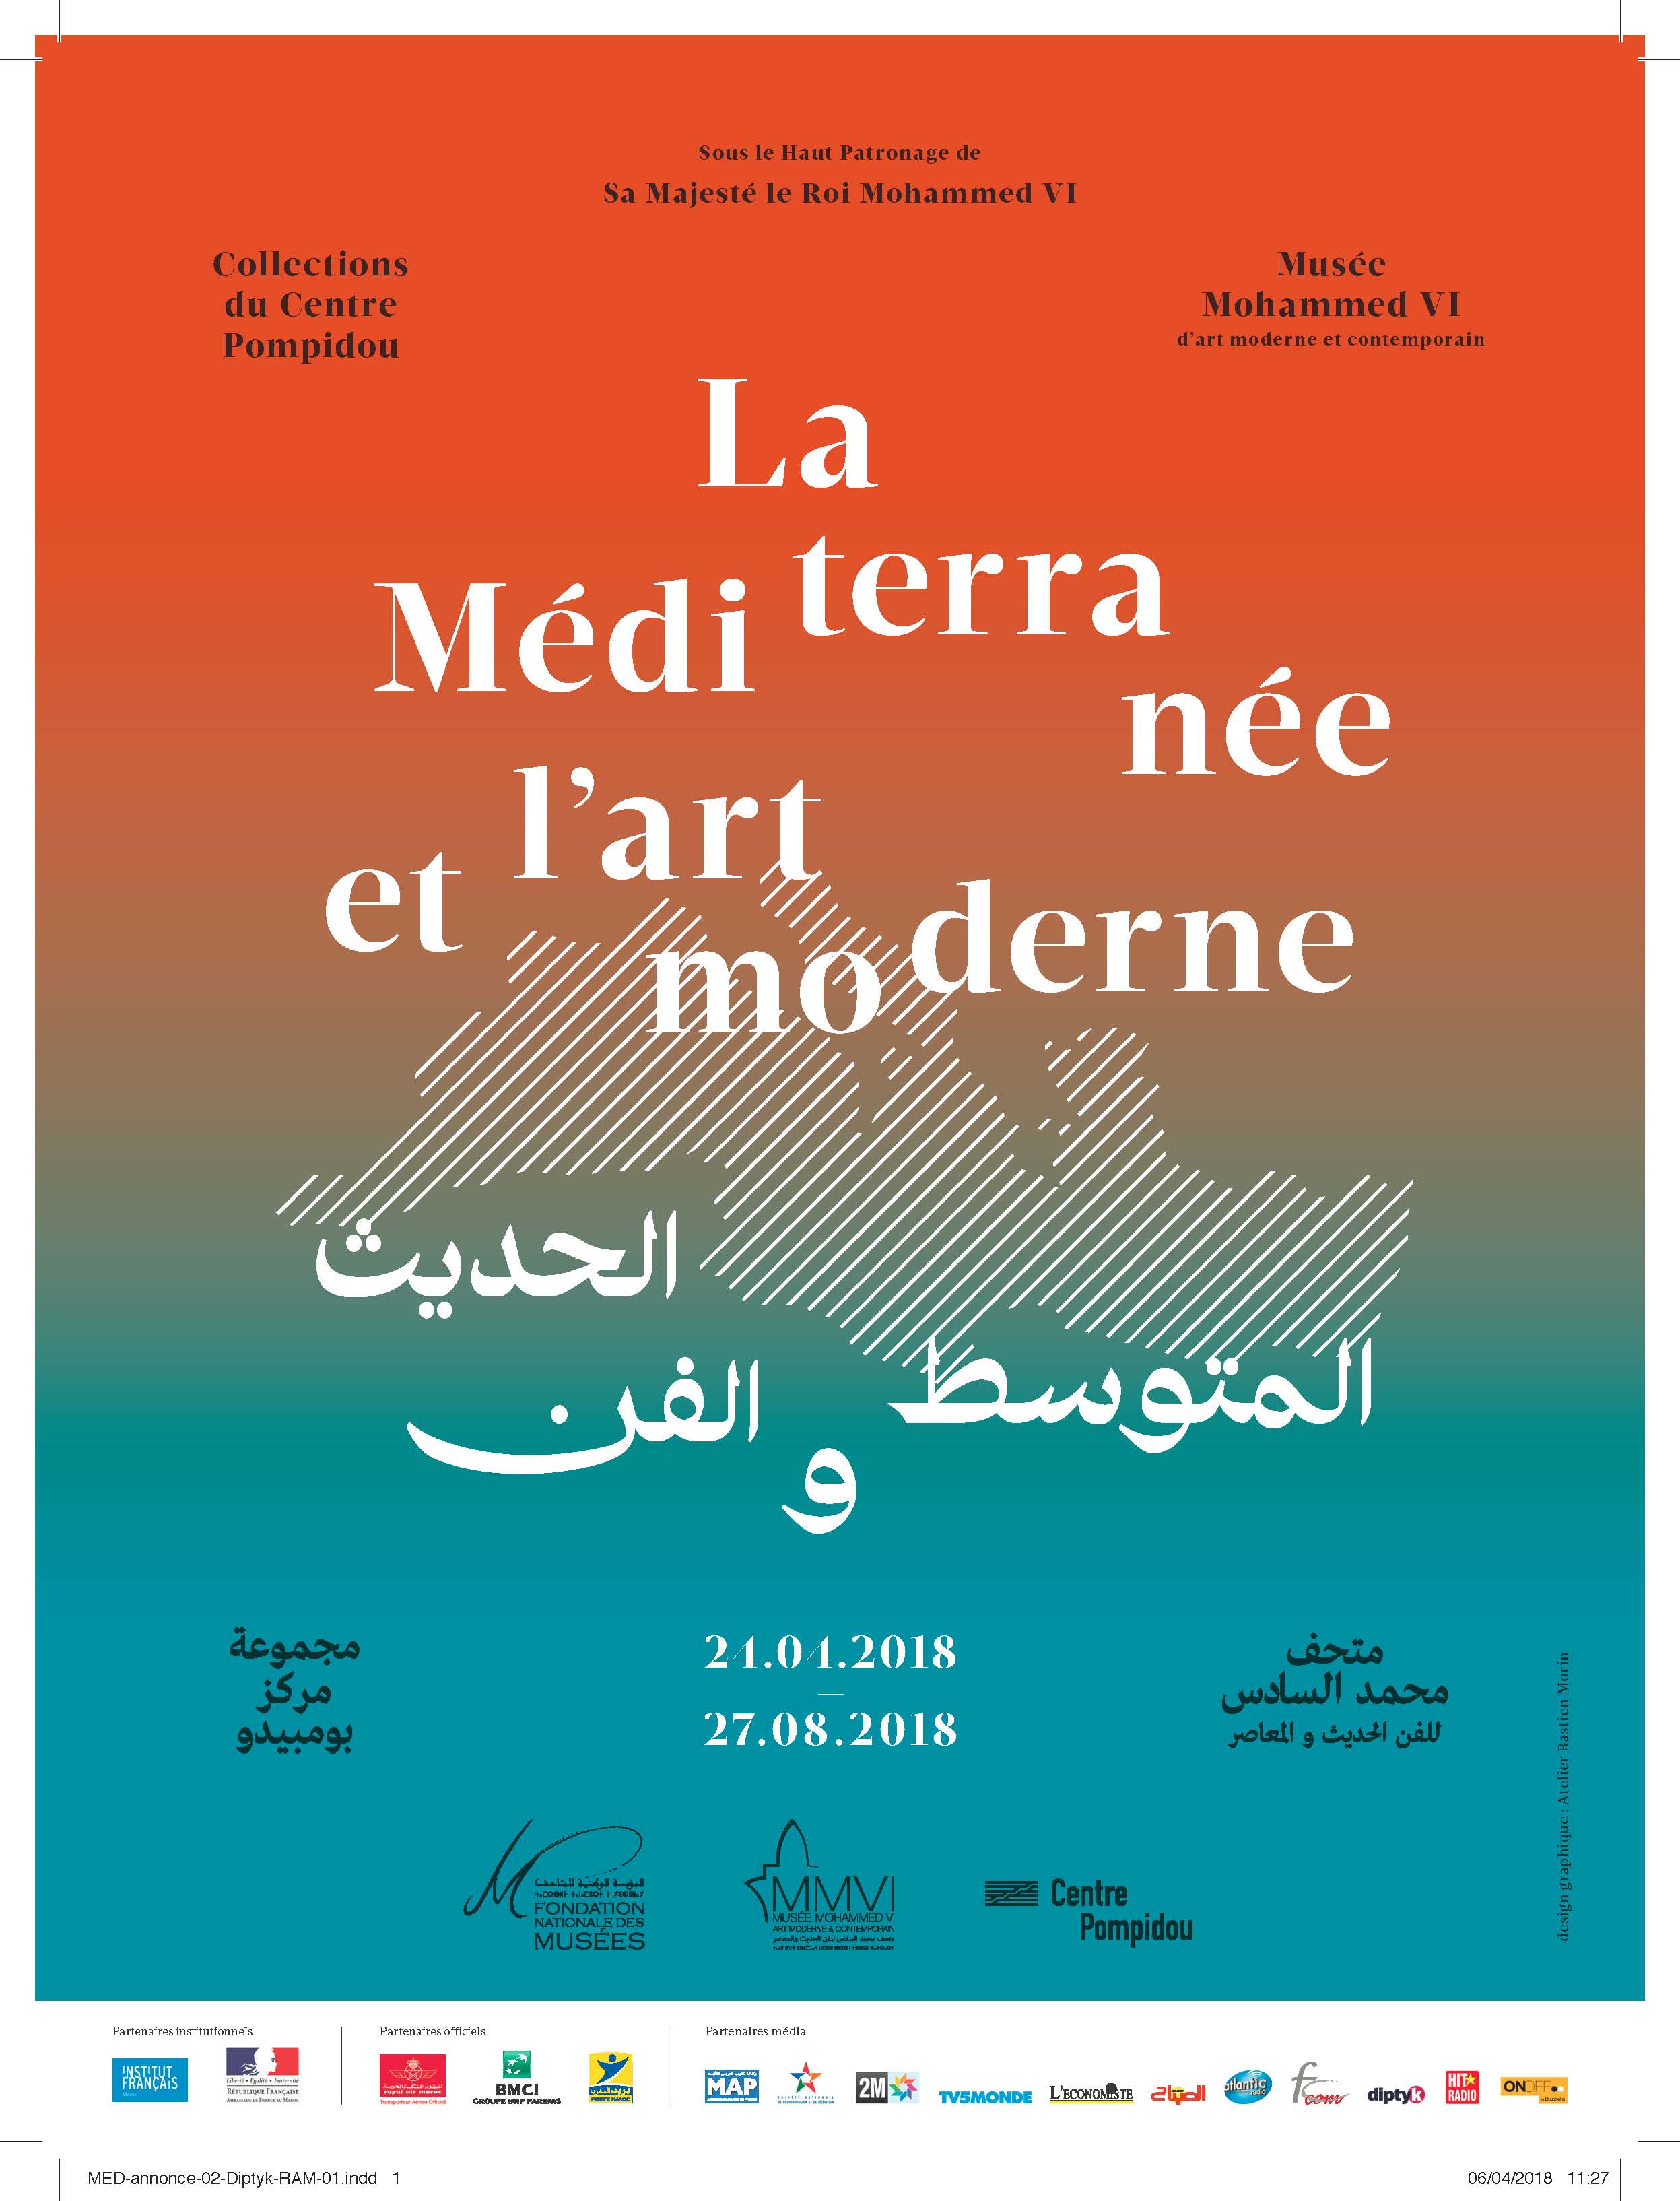 Musée Mohammed VI d’art moderne et contemporain de Rabat (MMVI), l’exposition - « La Méditerranée et l’art moderne »